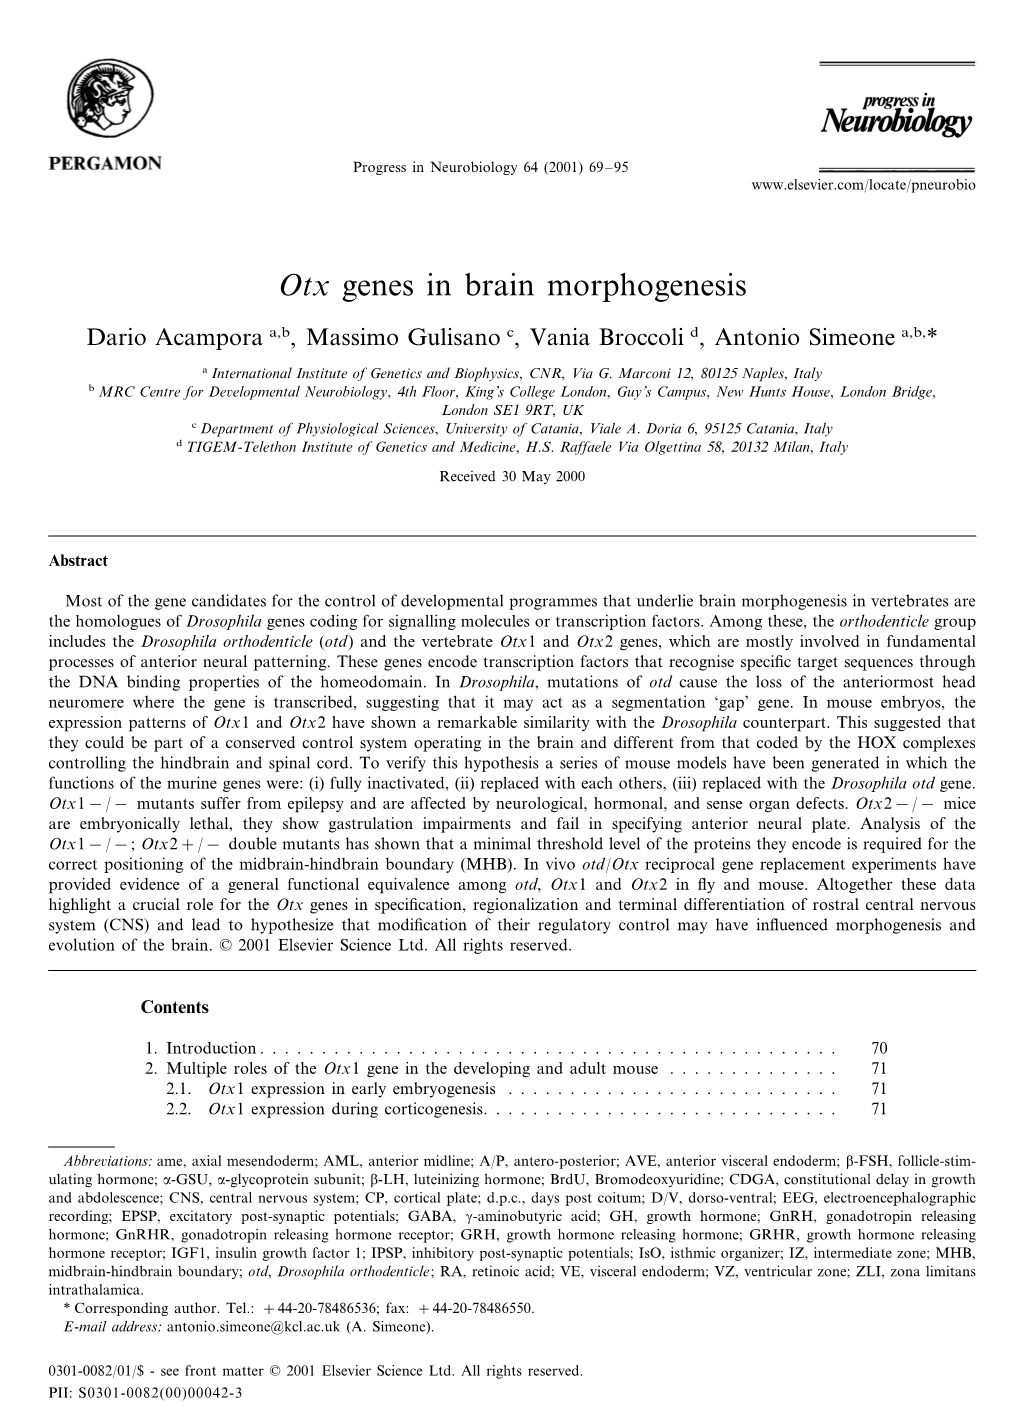 Otx Genes in Brain Morphogenesis